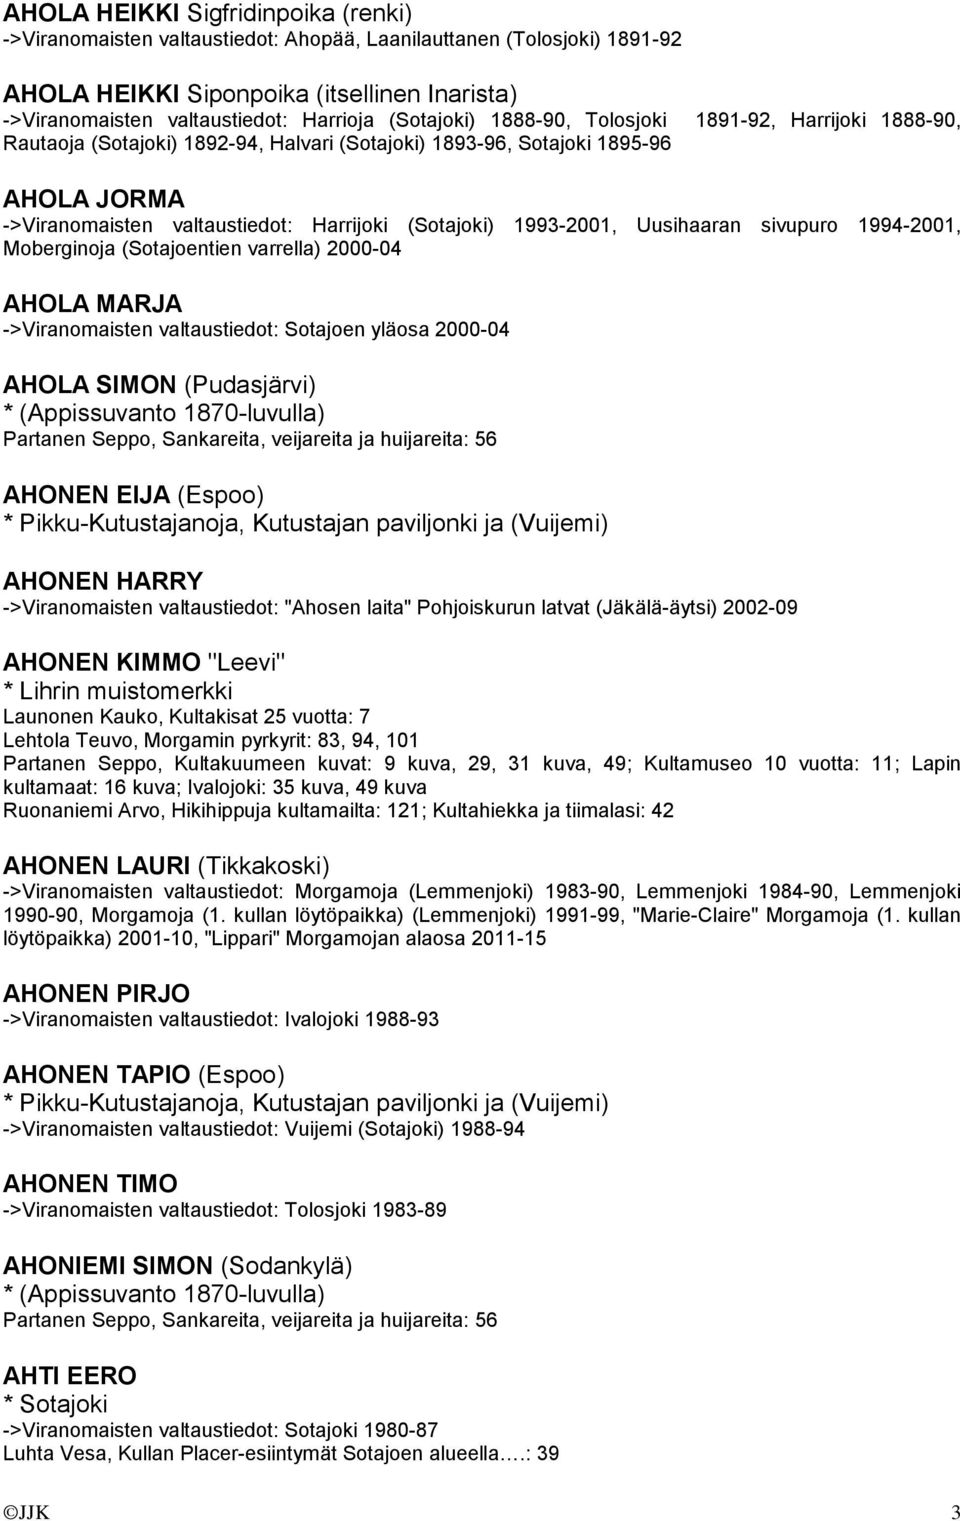 1993-2001, Uusihaaran sivupuro 1994-2001, Moberginoja (Sotajoentien varrella) 2000-04 AHOLA MARJA ->Viranomaisten valtaustiedot: Sotajoen yläosa 2000-04 AHOLA SIMON (Pudasjärvi) * (Appissuvanto